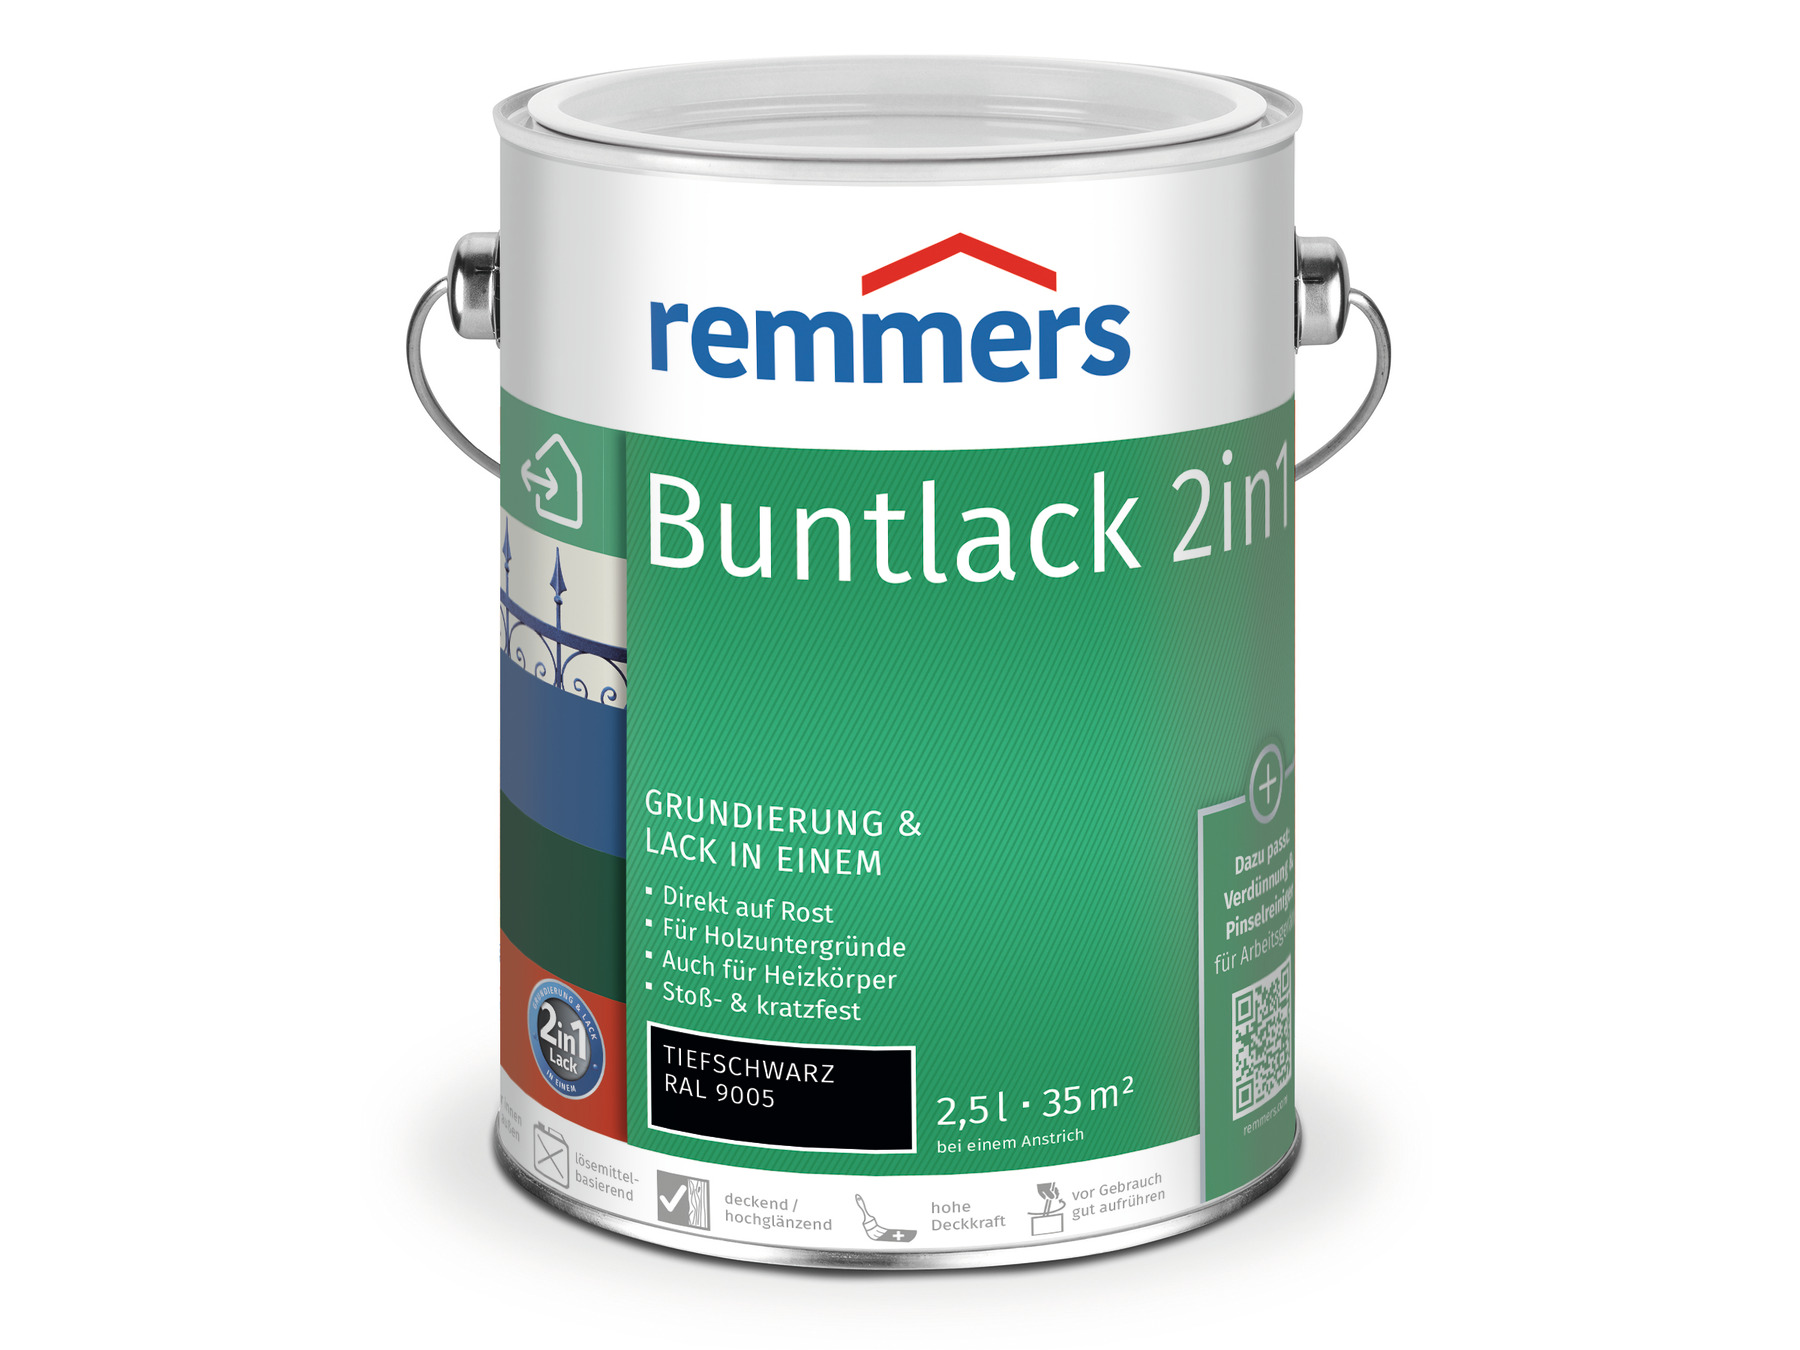 Remmers Buntlack 2in1